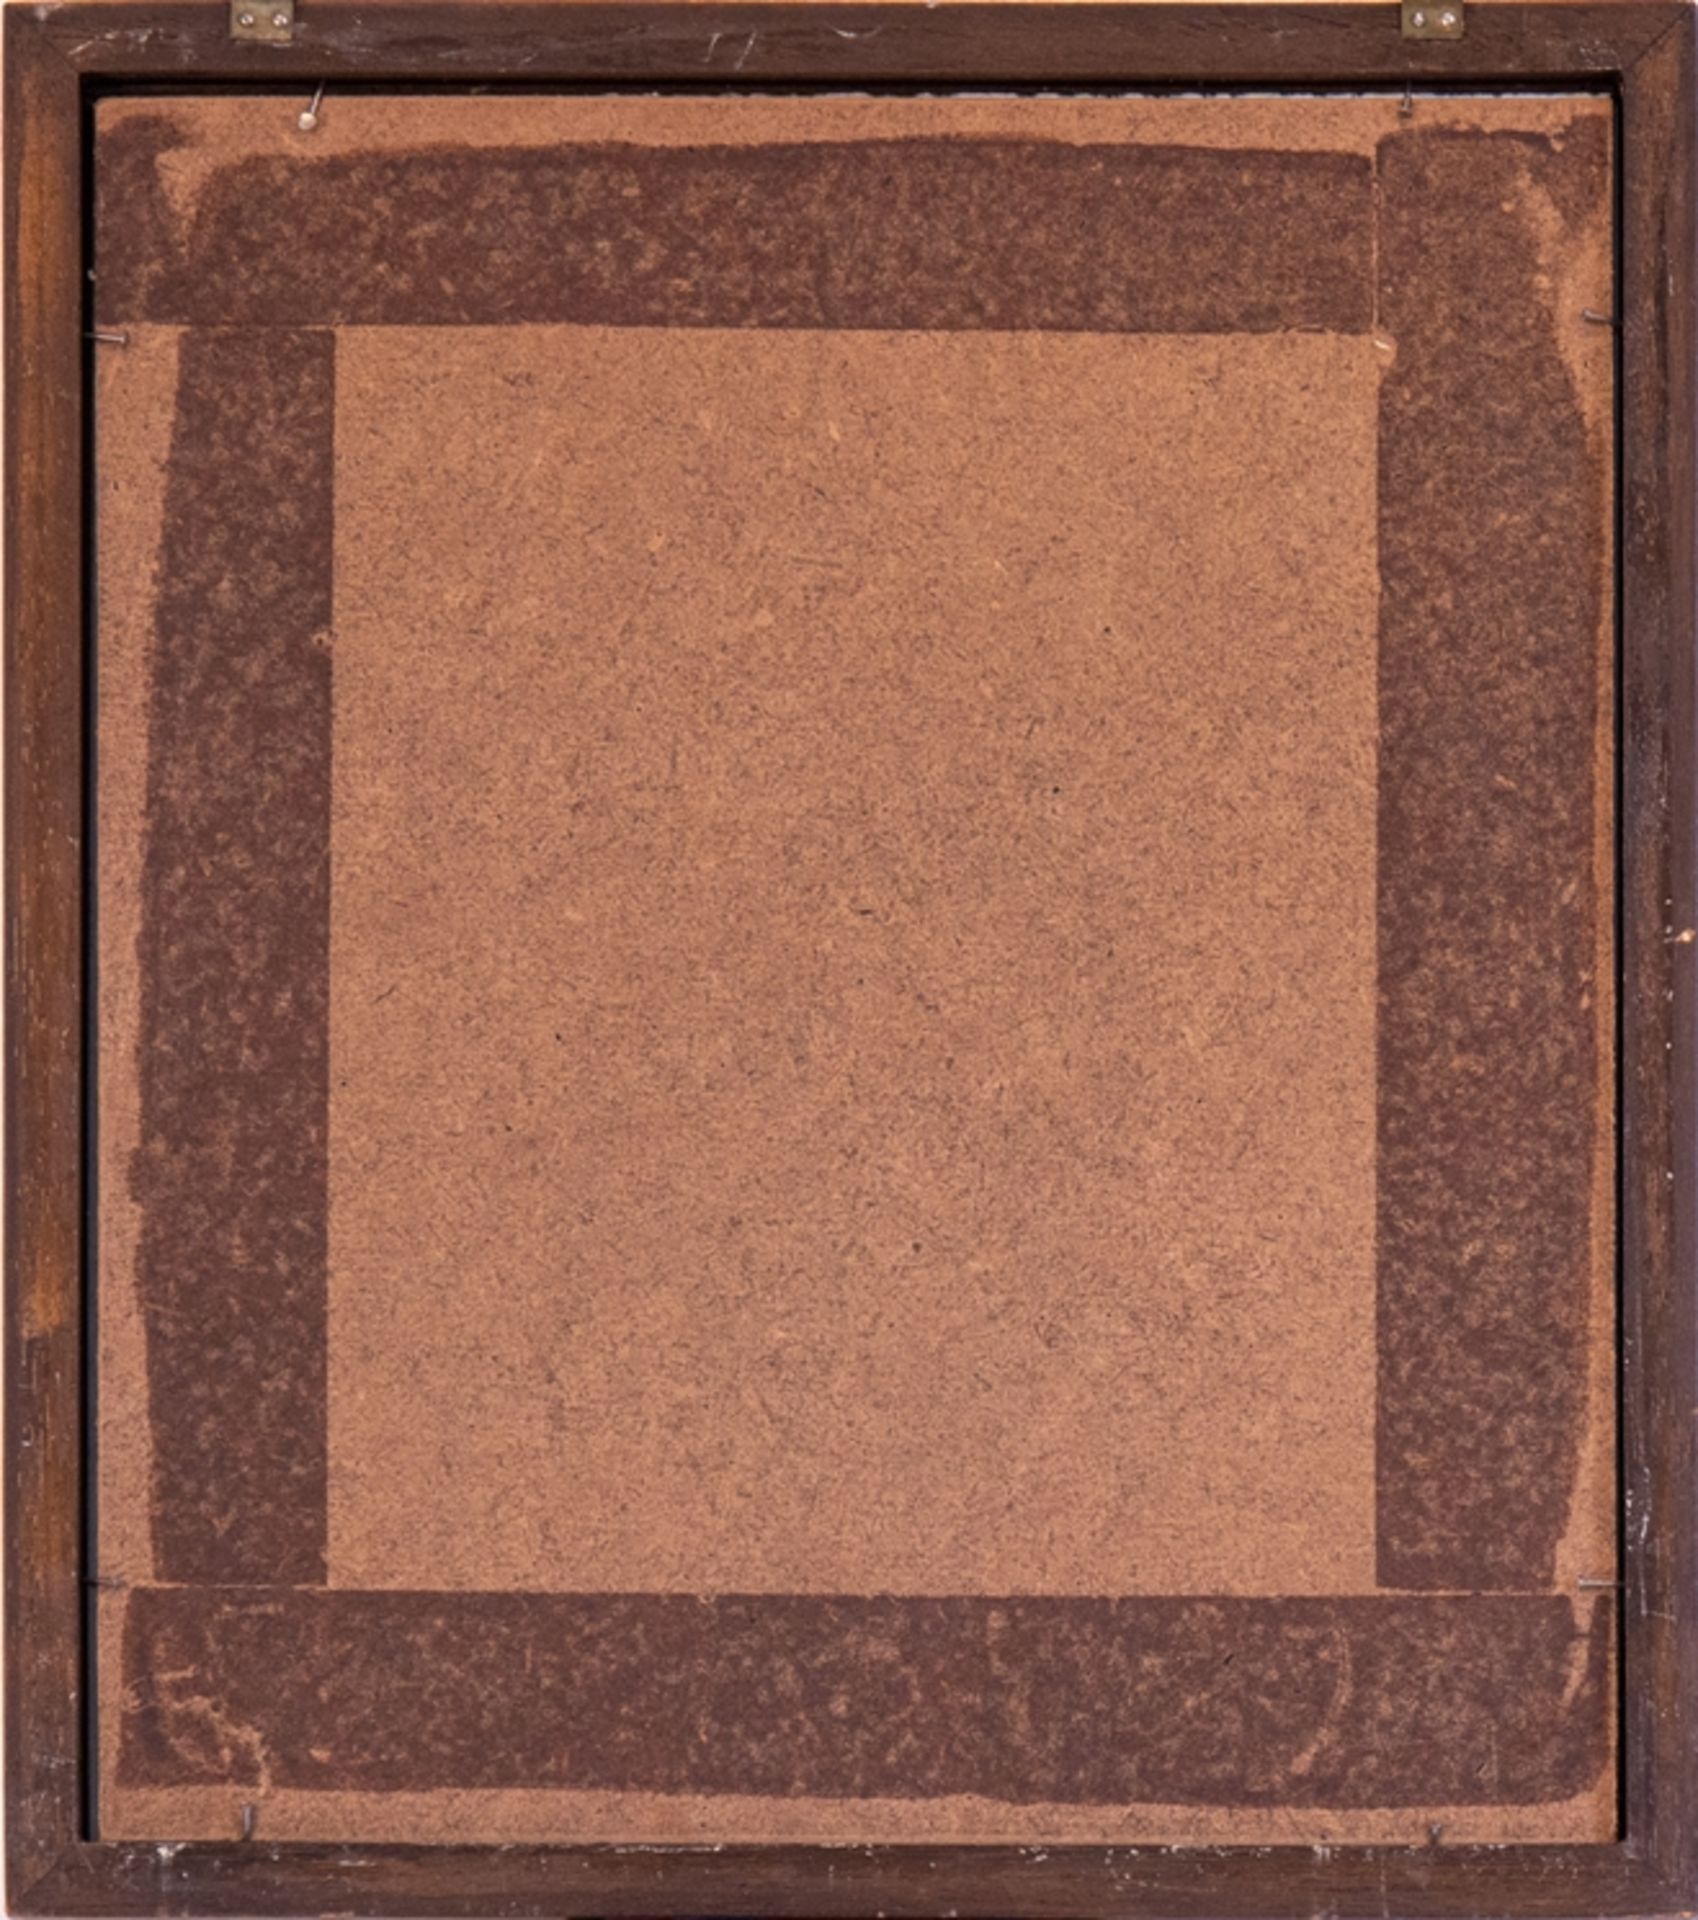 Etching Ernst Fuchs, "Aura Vignette", signed - Image 2 of 3